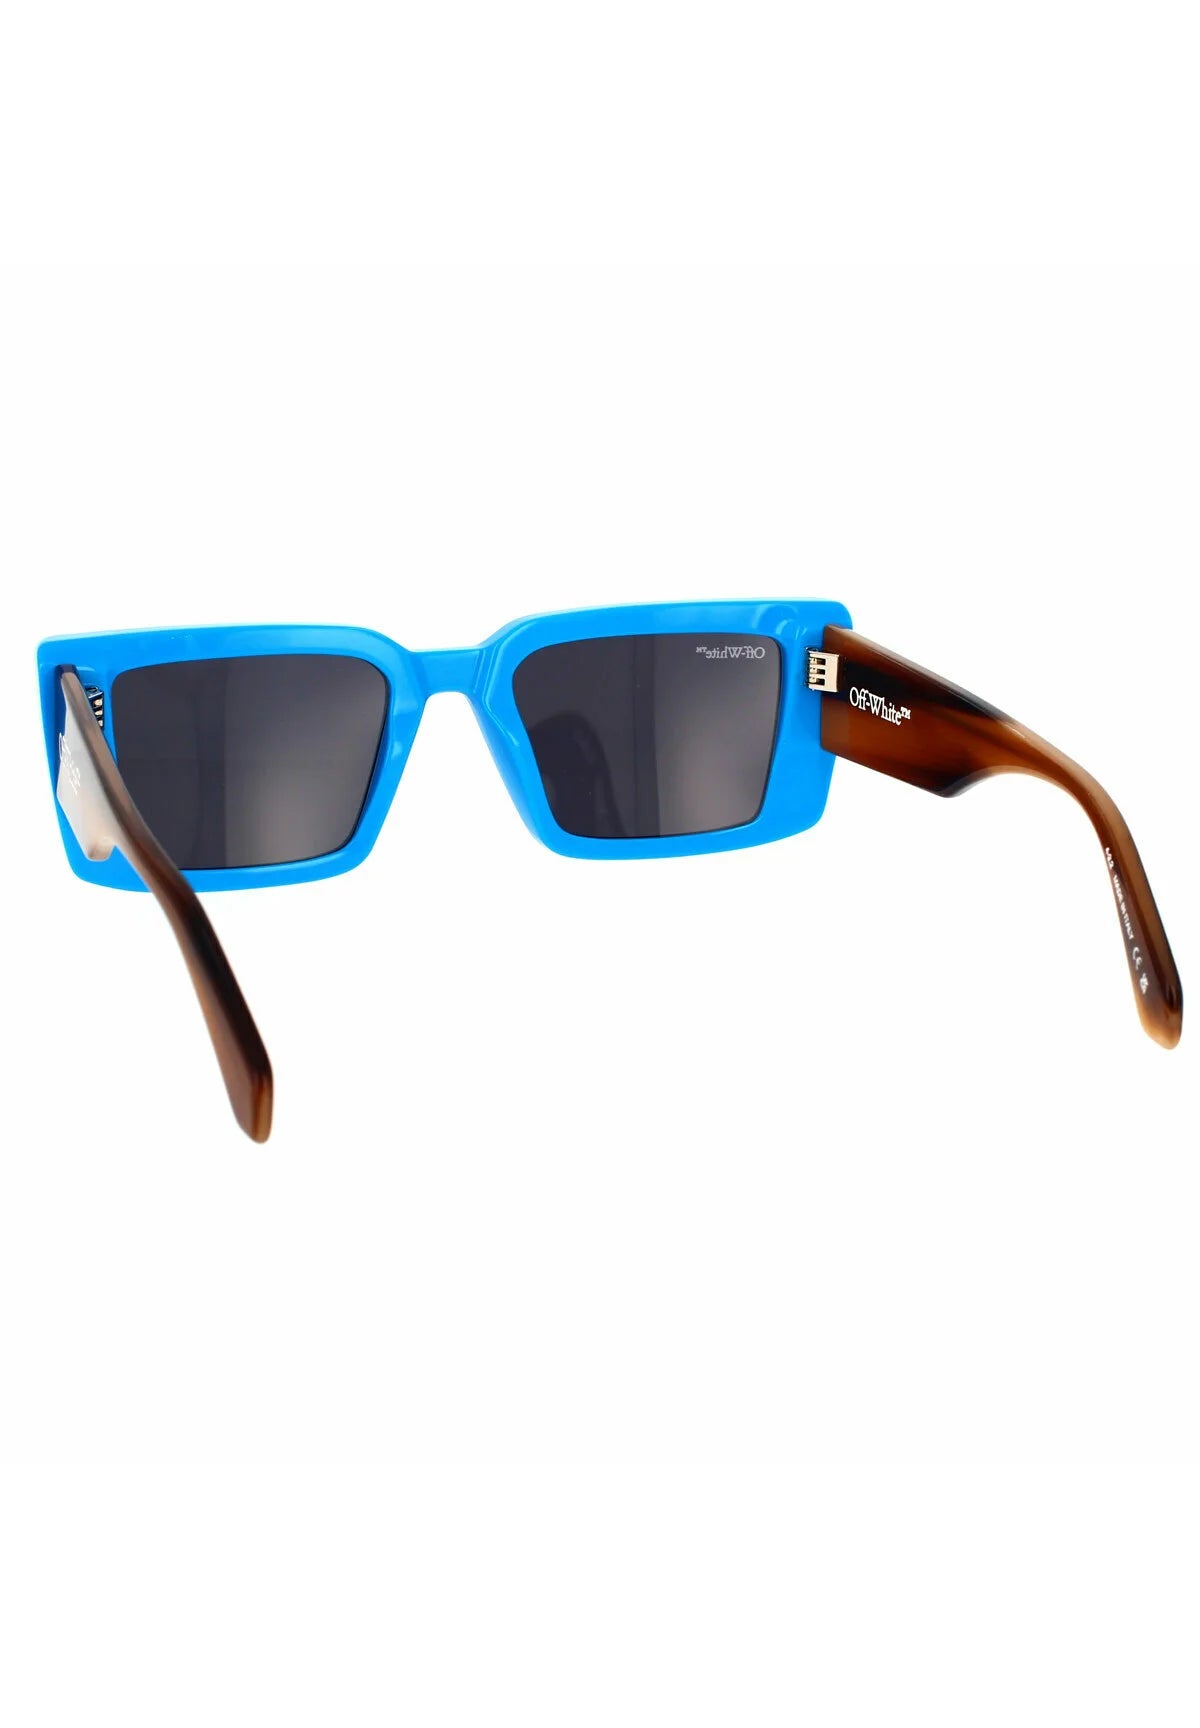 Off-White Sunglasses Savannah Brown Blue